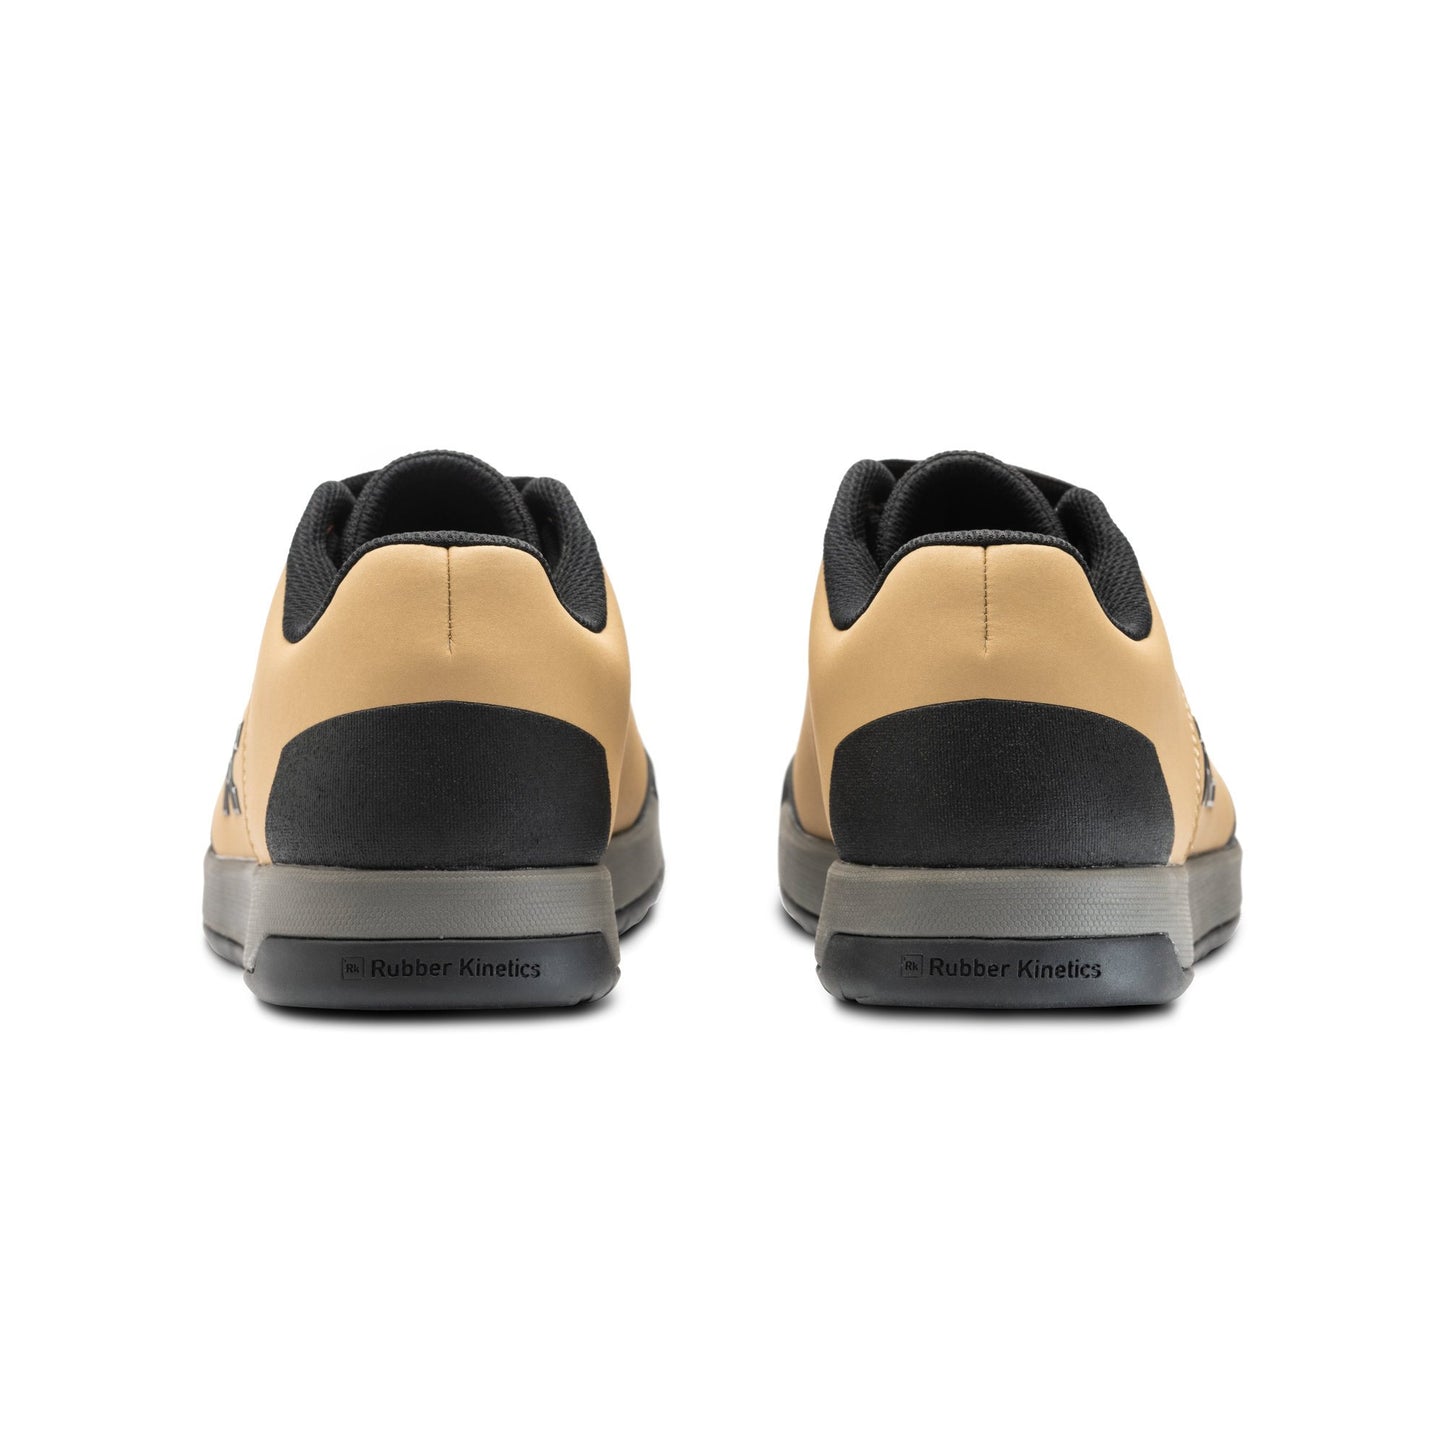 Ride Concepts Hellion Elite Shoes Black / Charcoal